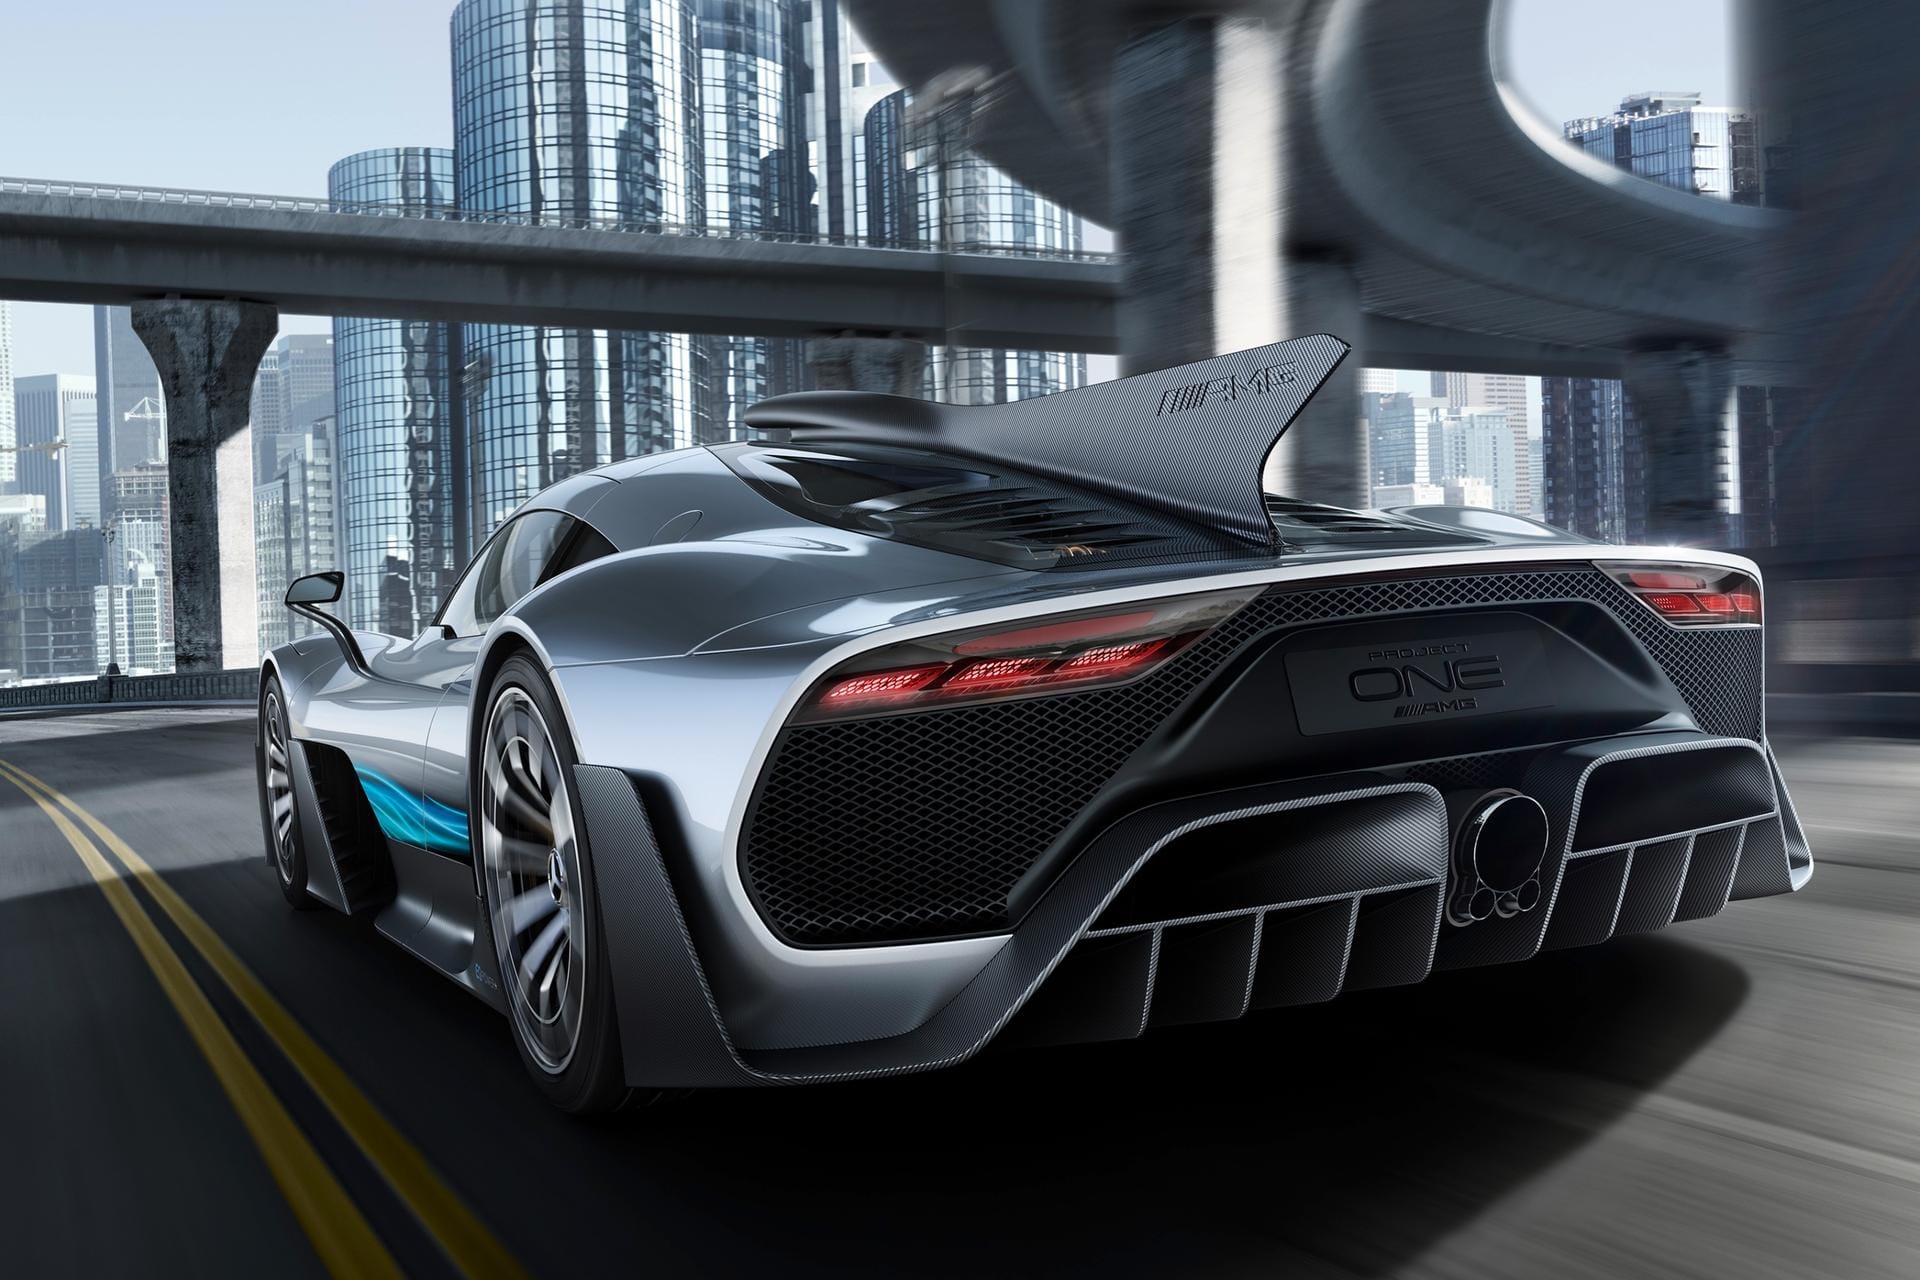 Eindrucksvoll: Das Heckdesign des Mercedes-AMG Project One.